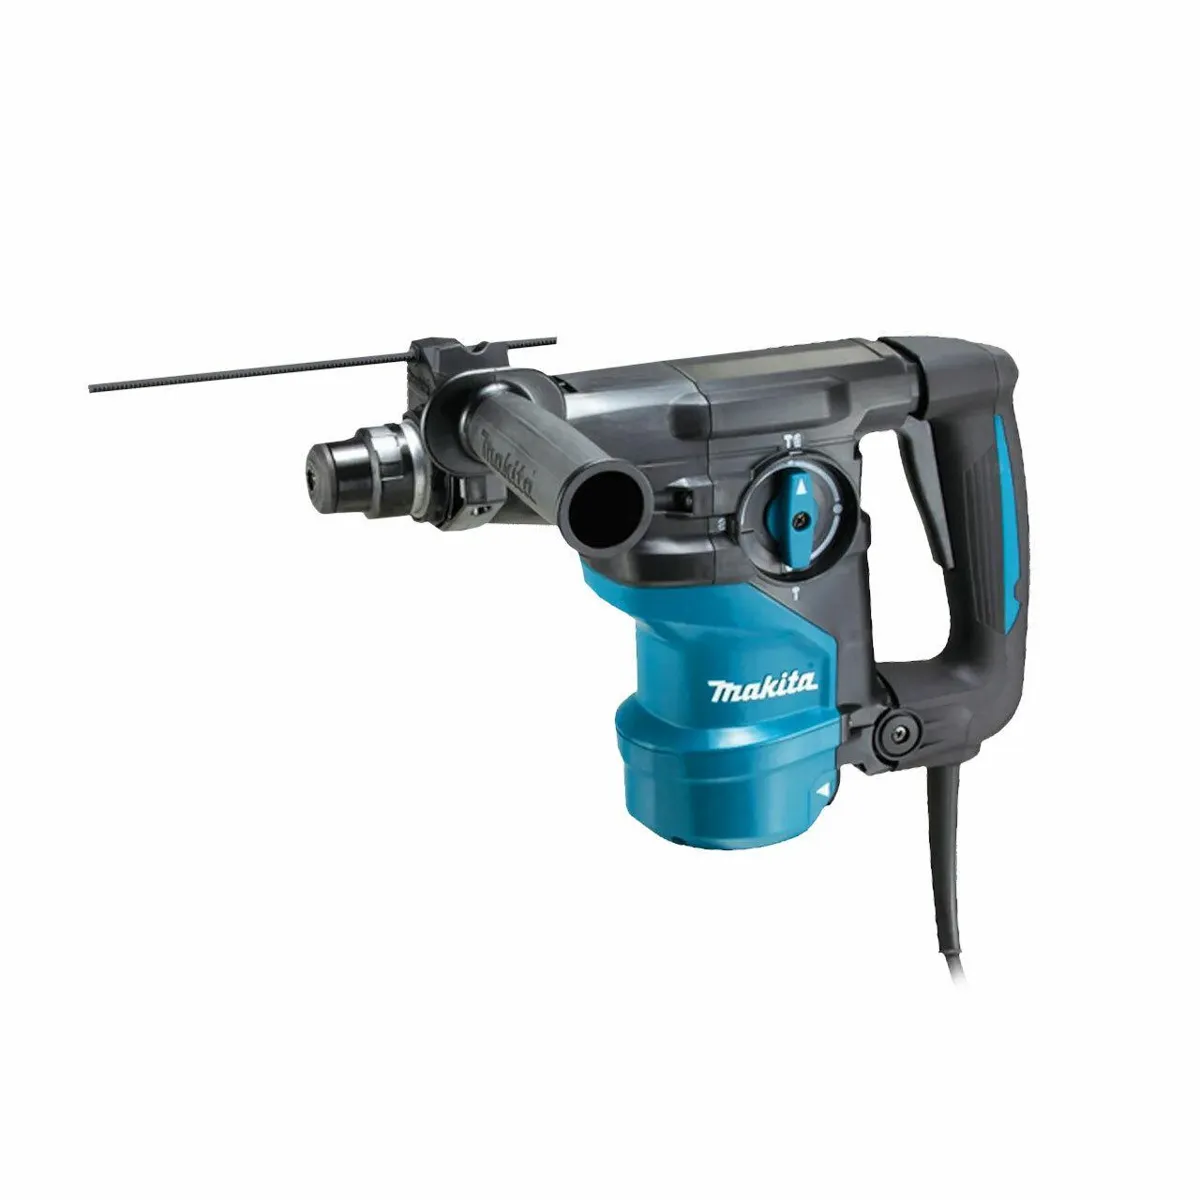 Makita HR3001CJ/2 SDS+ Rotary Hammer Drill 240V